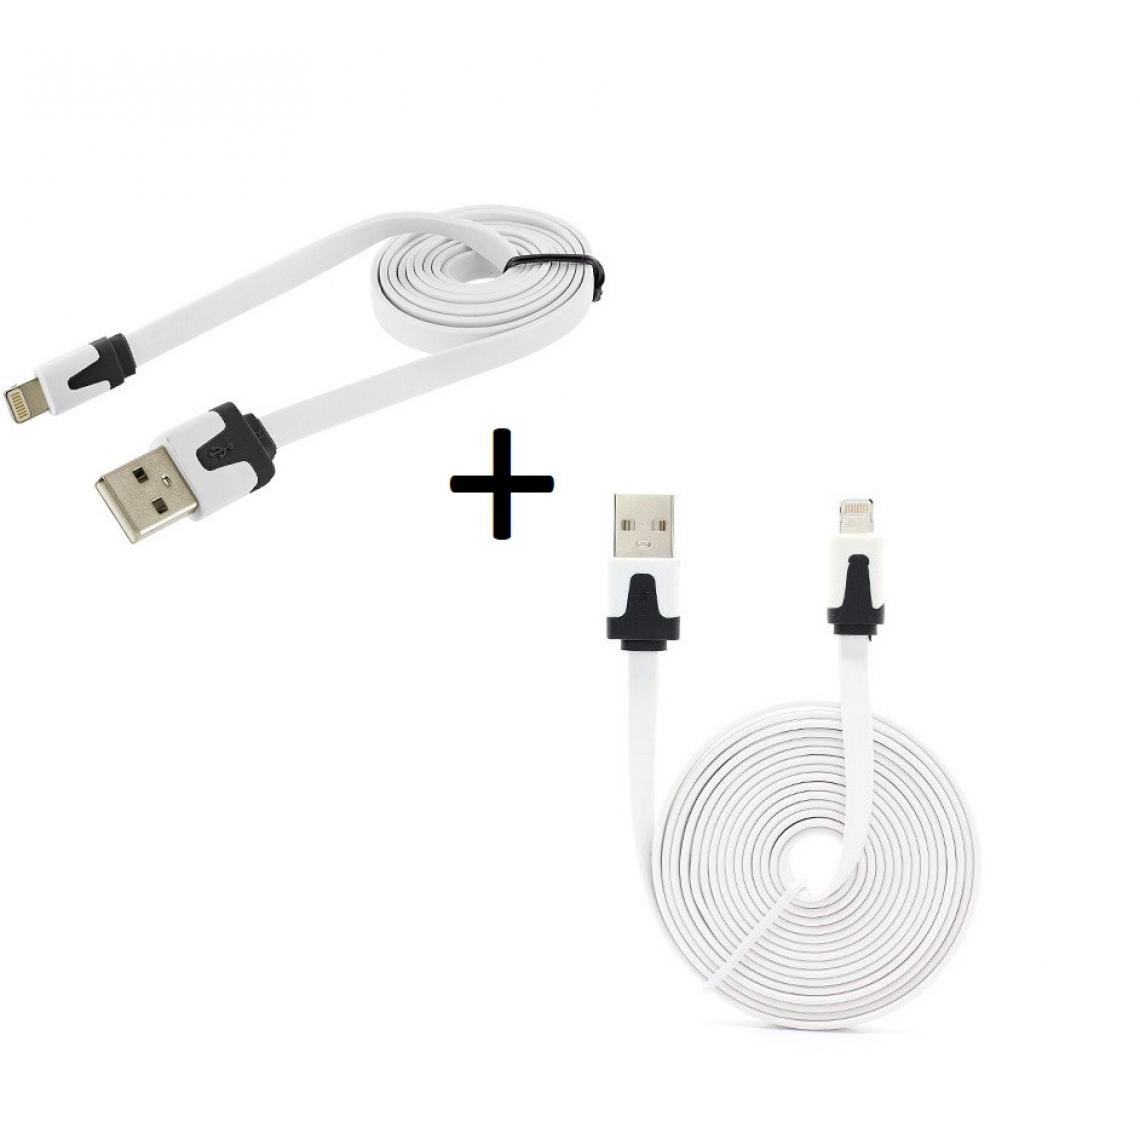 Shot - Pack Chargeur pour "IPHONE 12" Lightning (Cable Noodle 3m + Cable Noodle 1m) USBIOS (BLANC) - Chargeur secteur téléphone